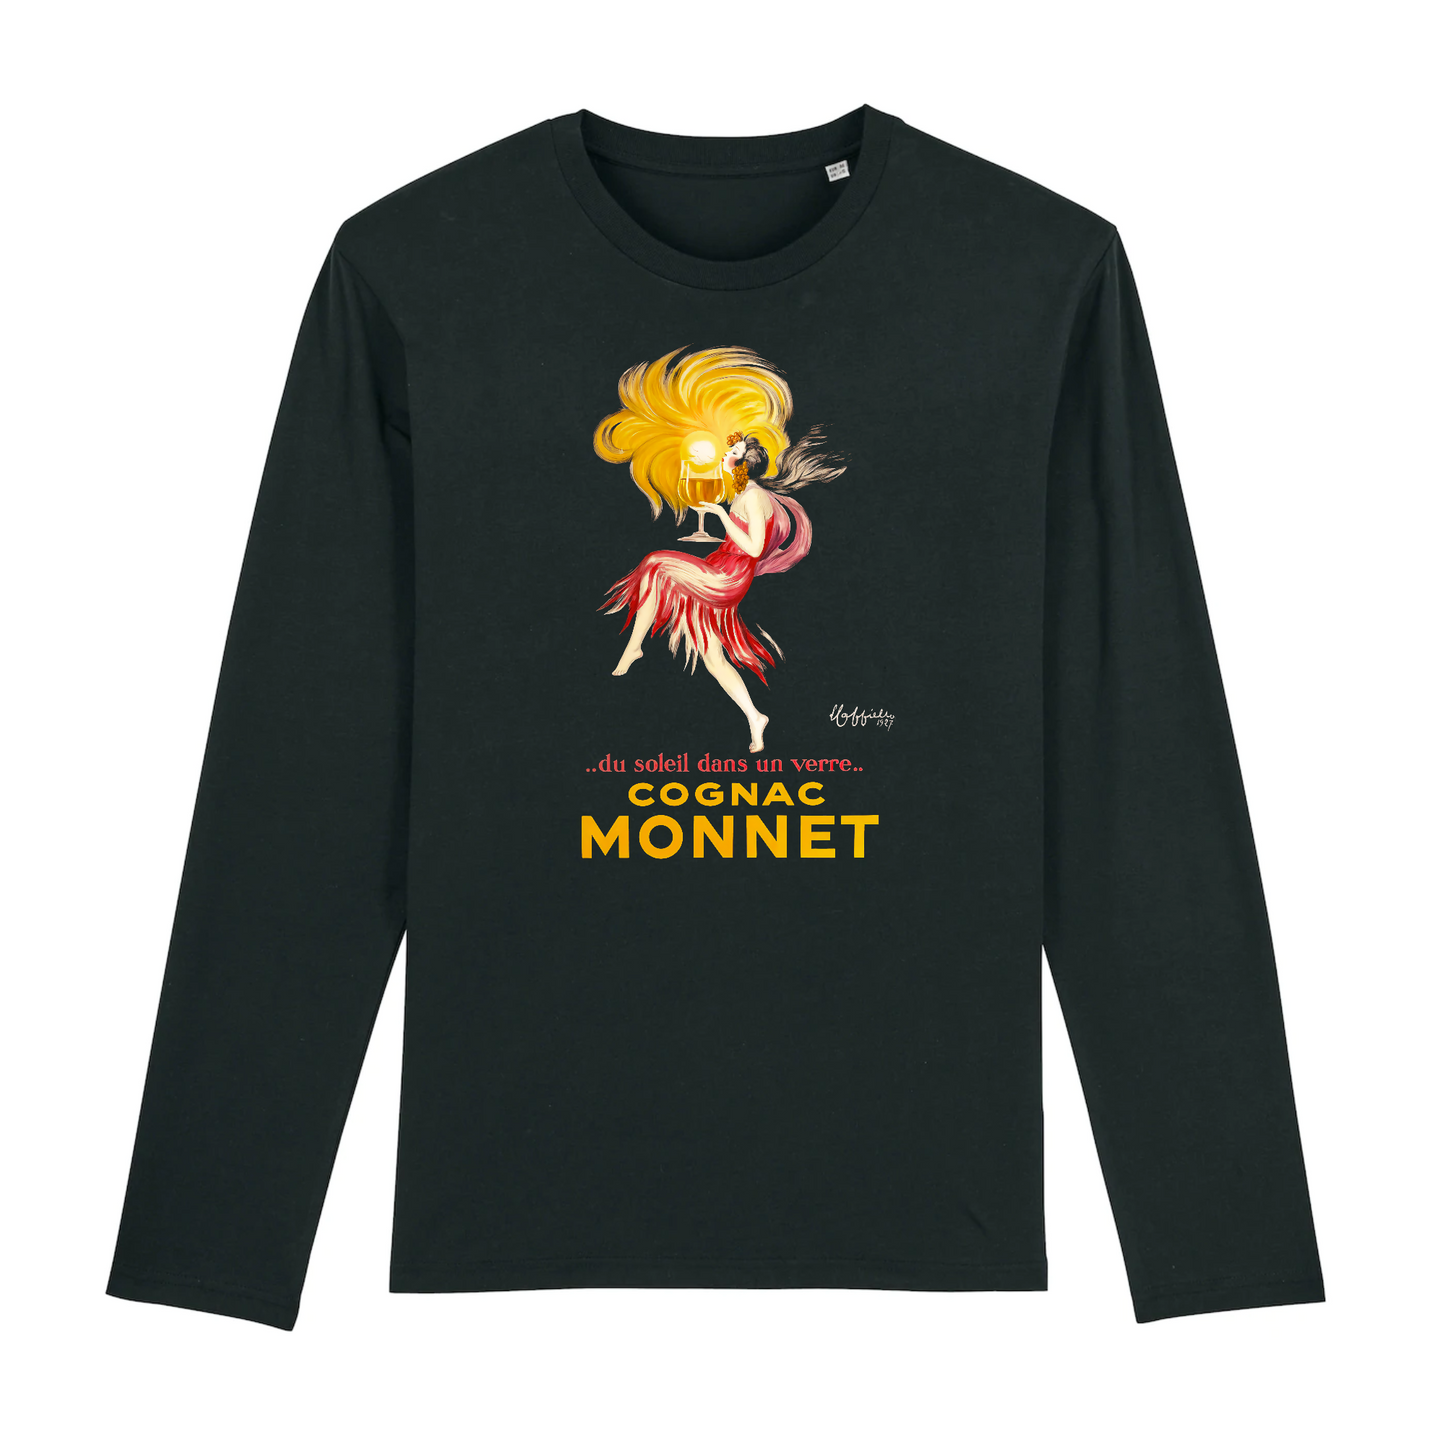 Cognac Monnet by Leonetto Capiello, 1927 - Organic Cotton Long-Sleeve T-Shirt